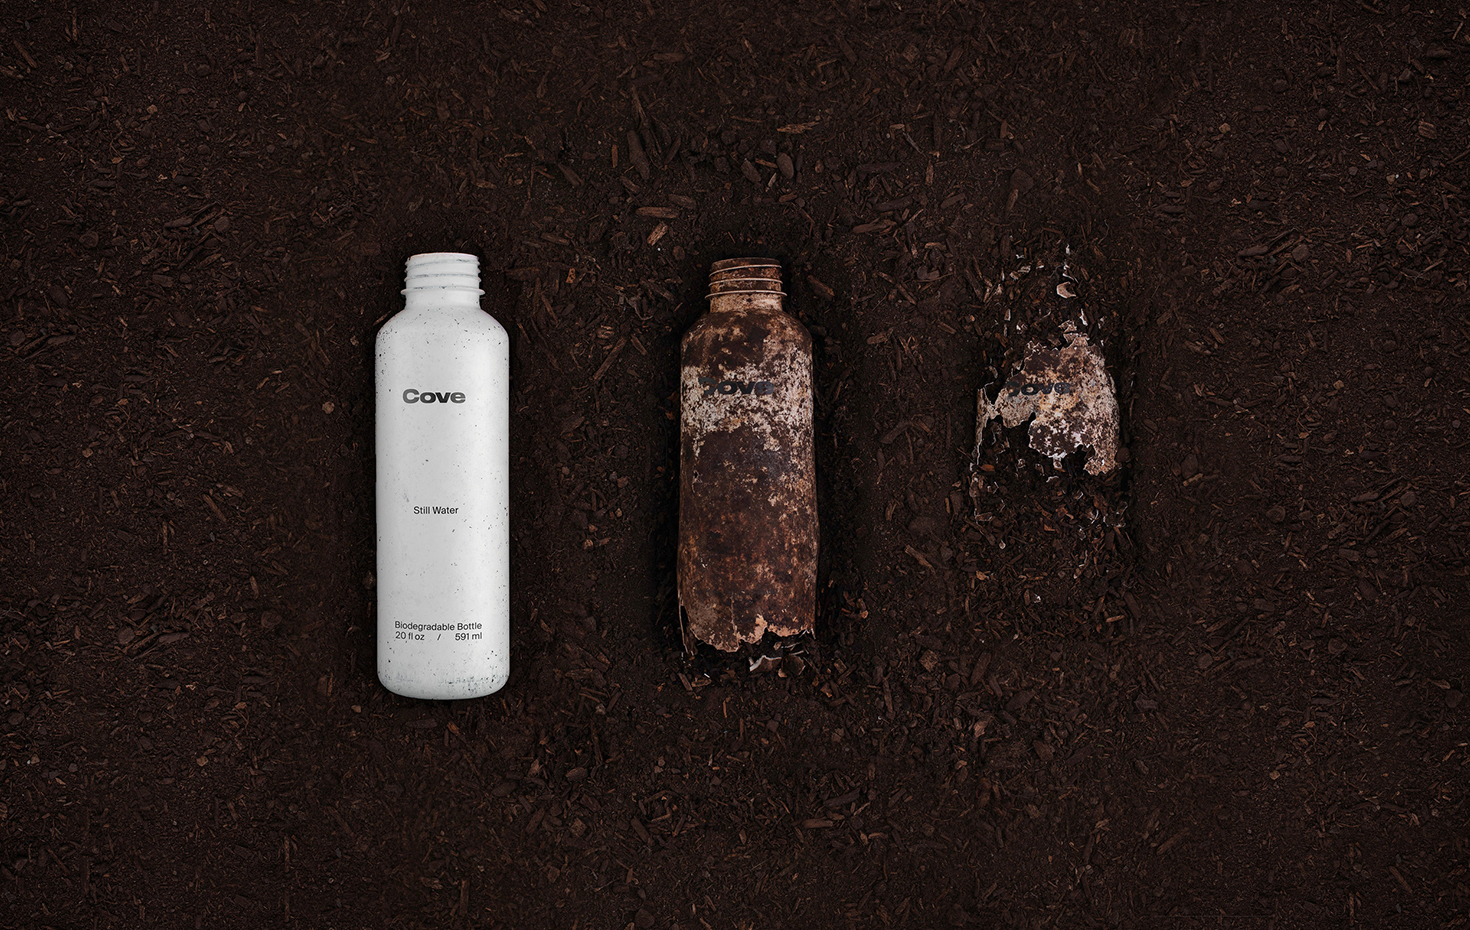 Cove Biodegradable Bottle - Plastikfreie Wasserflasche Nachhaltige Kunststoffe